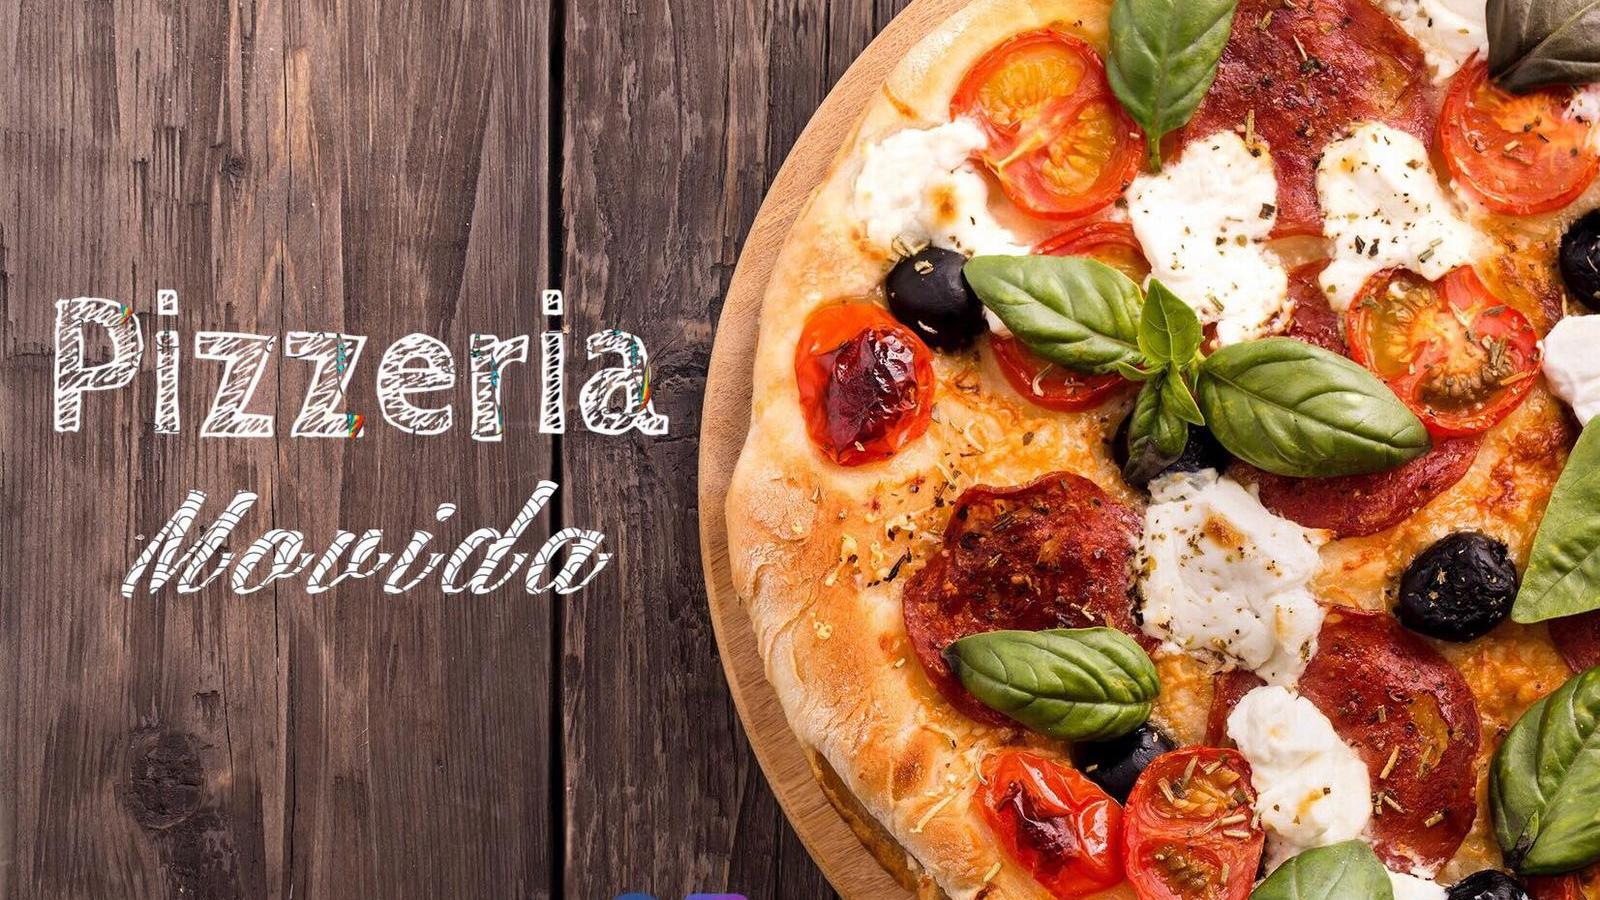 Miglior pizzeria a Foggia - Movida 71100 | Localtourism.it